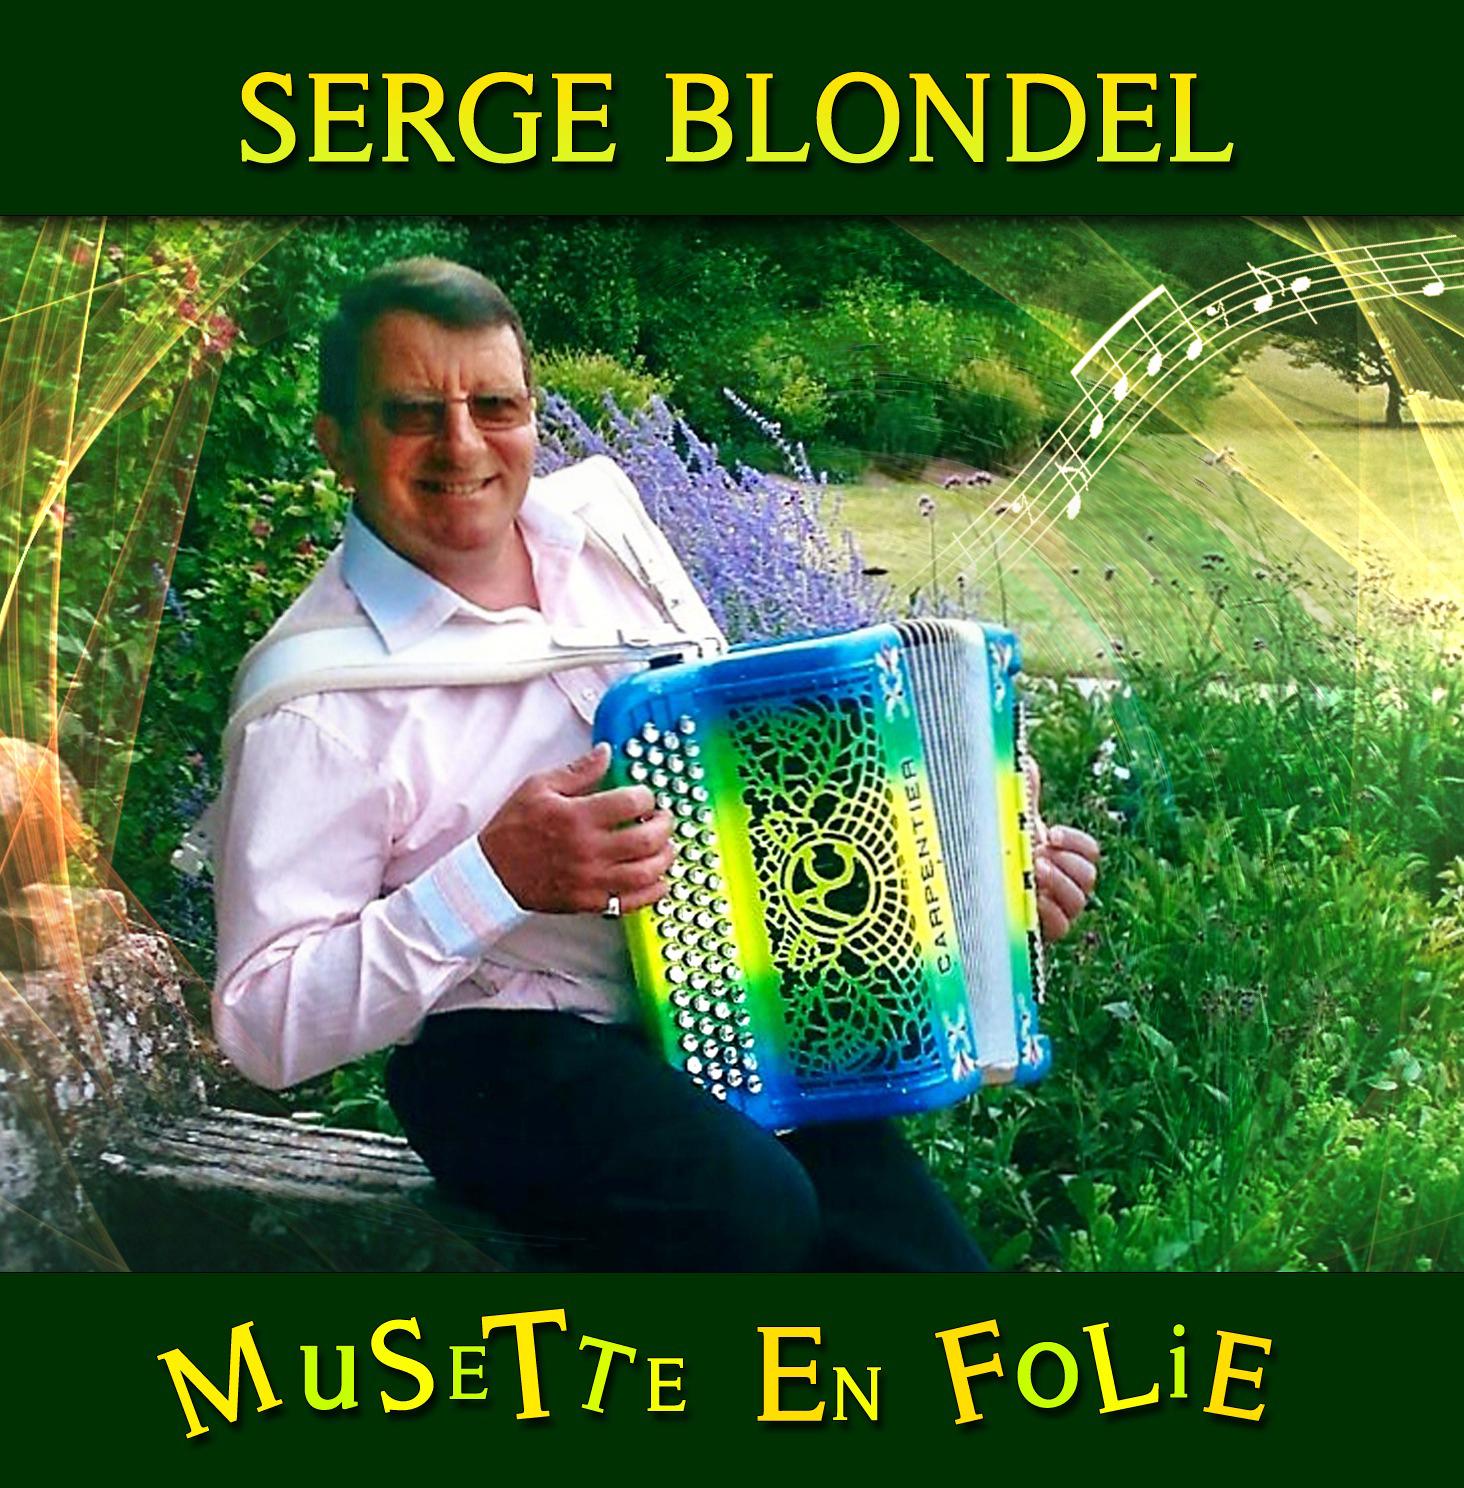 Serge blondel